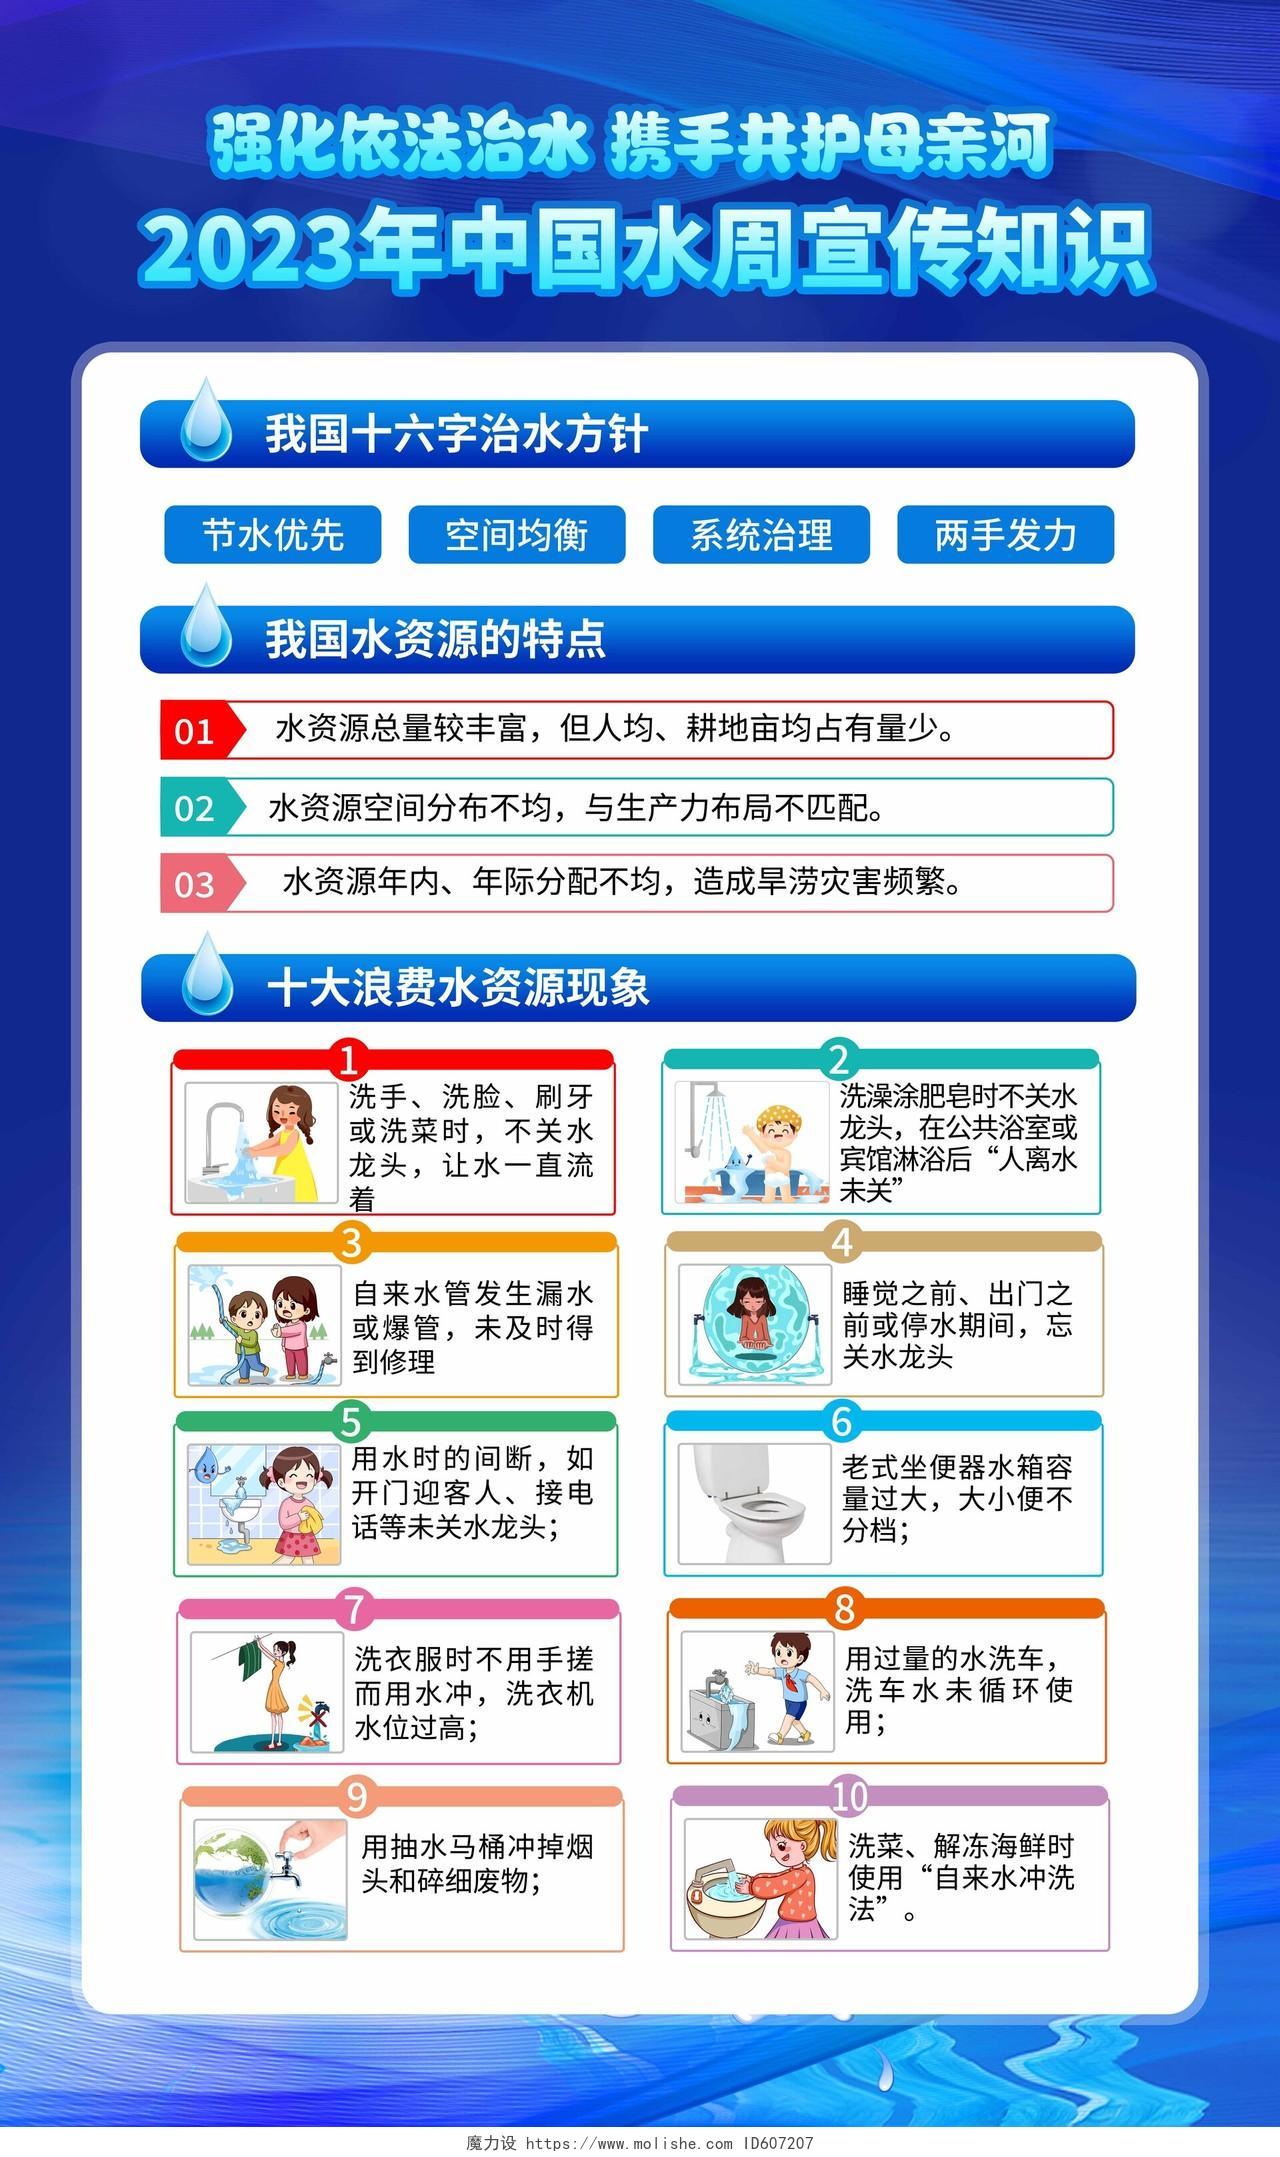 蓝色风格2023世界水日暨中国水周宣传海报